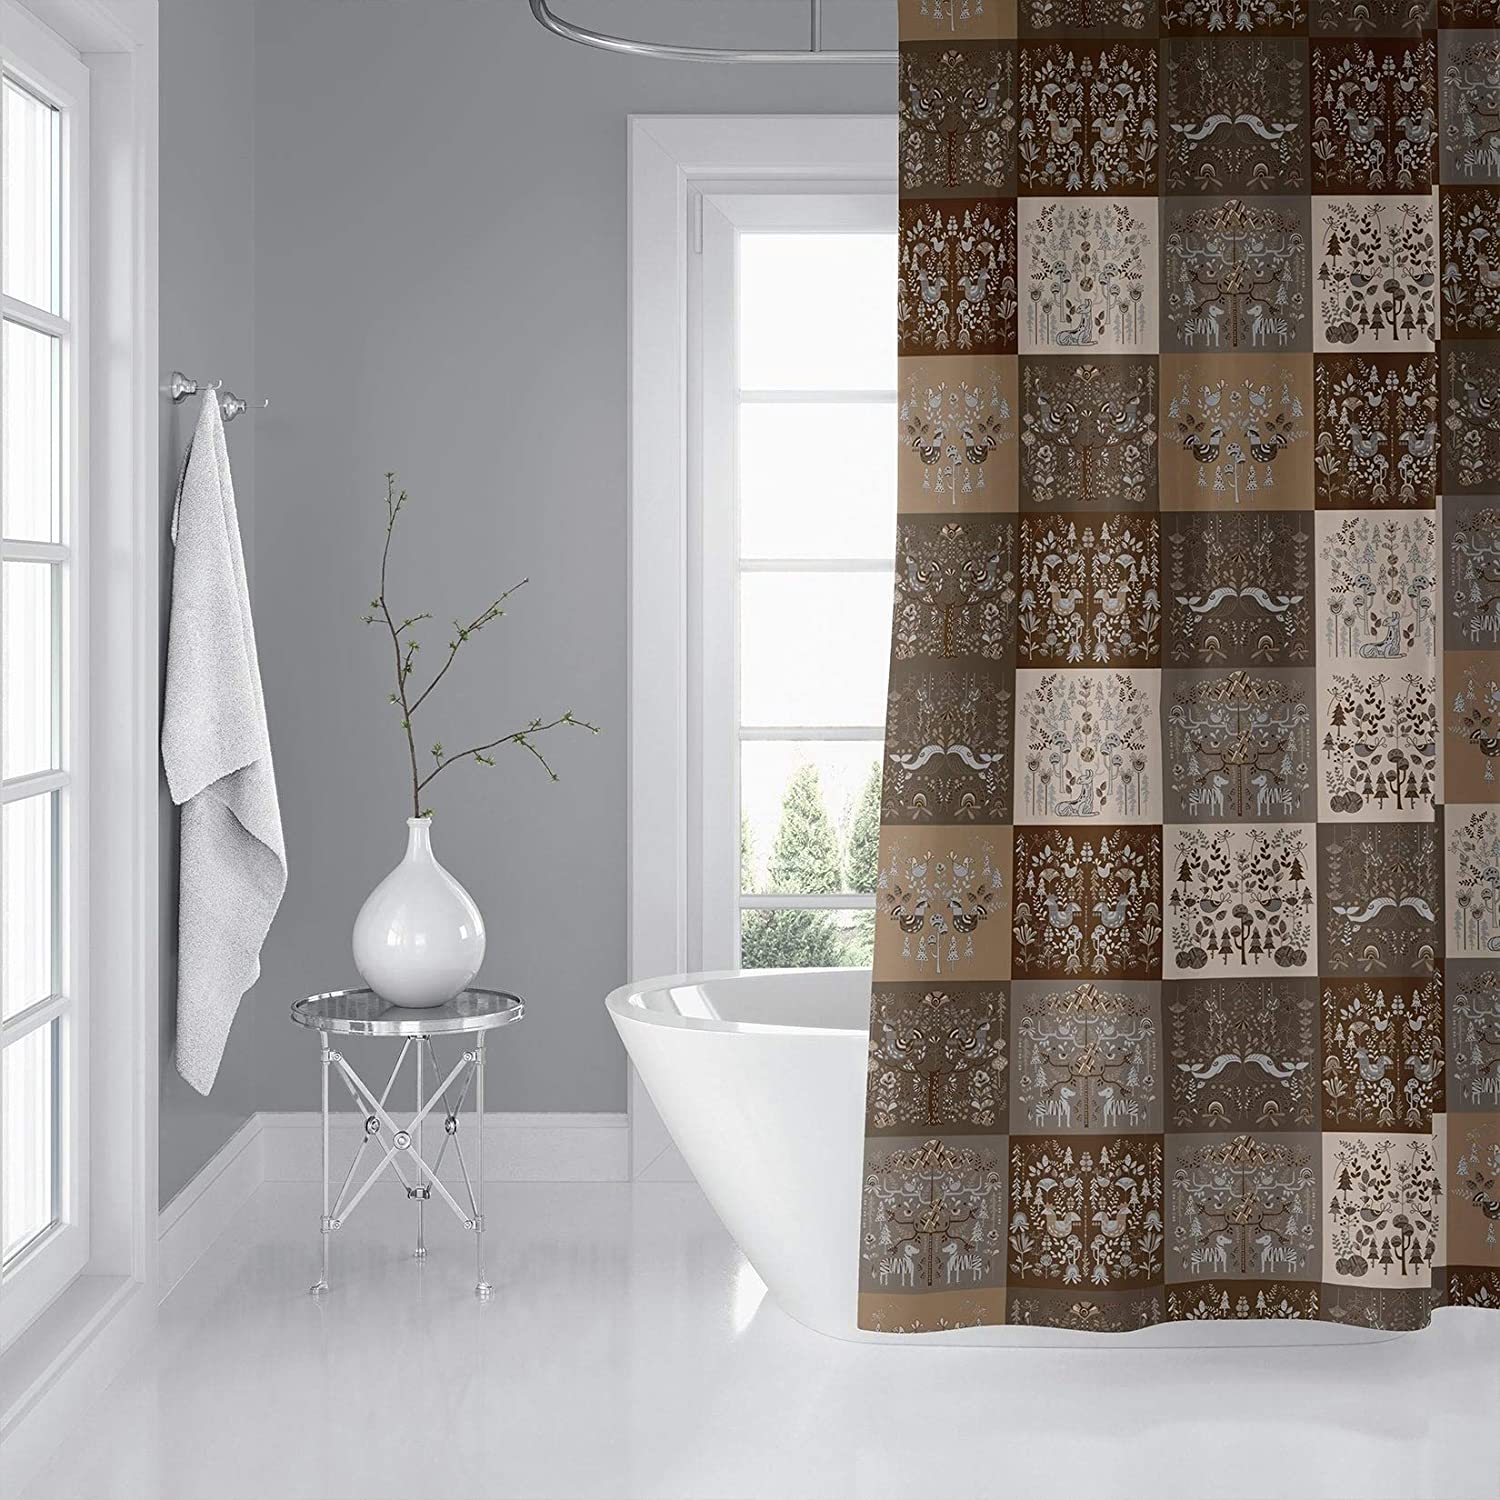 MISC Scandinavian Patchwork Neutral Shower Curtain by 71x74 Brown Patchwork Scandinavian Polyester